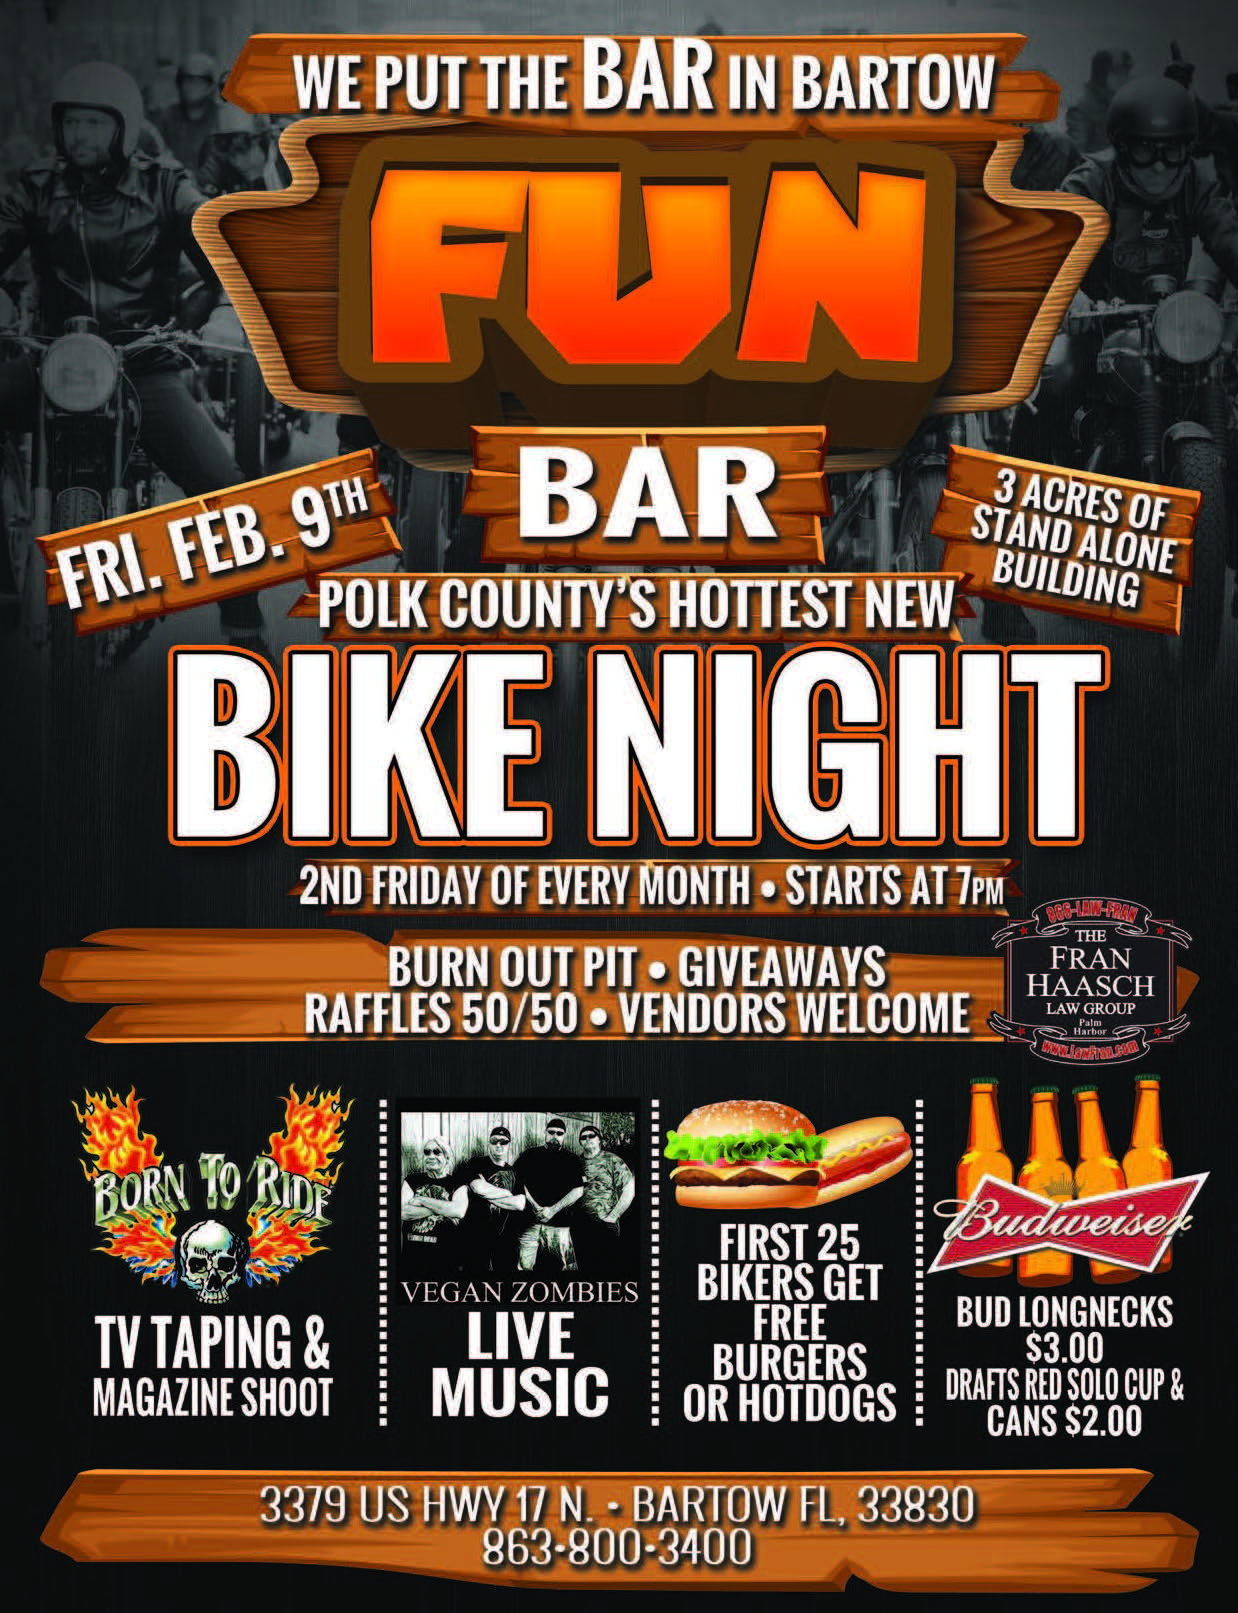 Fun Bar Bike Night Born To Ride Motorcycle Magazine Motorcycle TV